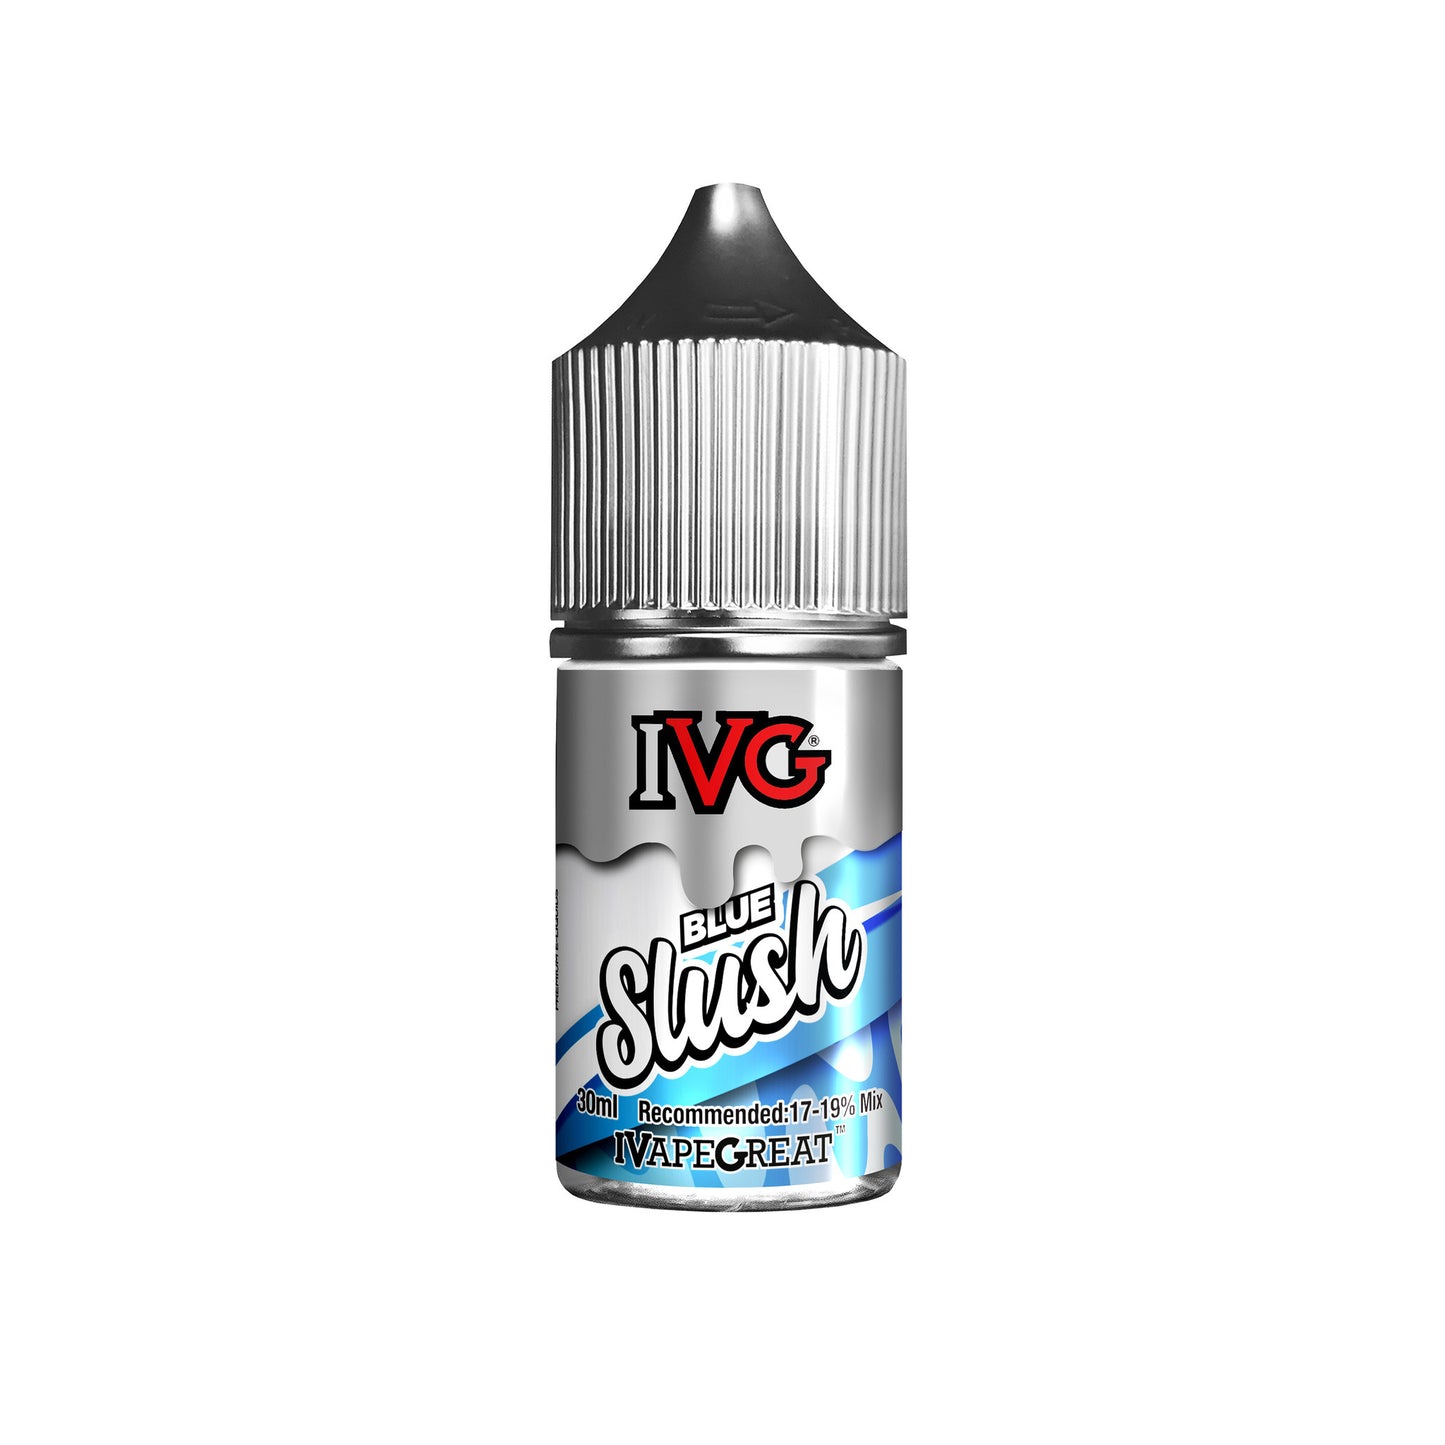 IVG - Blue Slush 30ml Flavour Shot